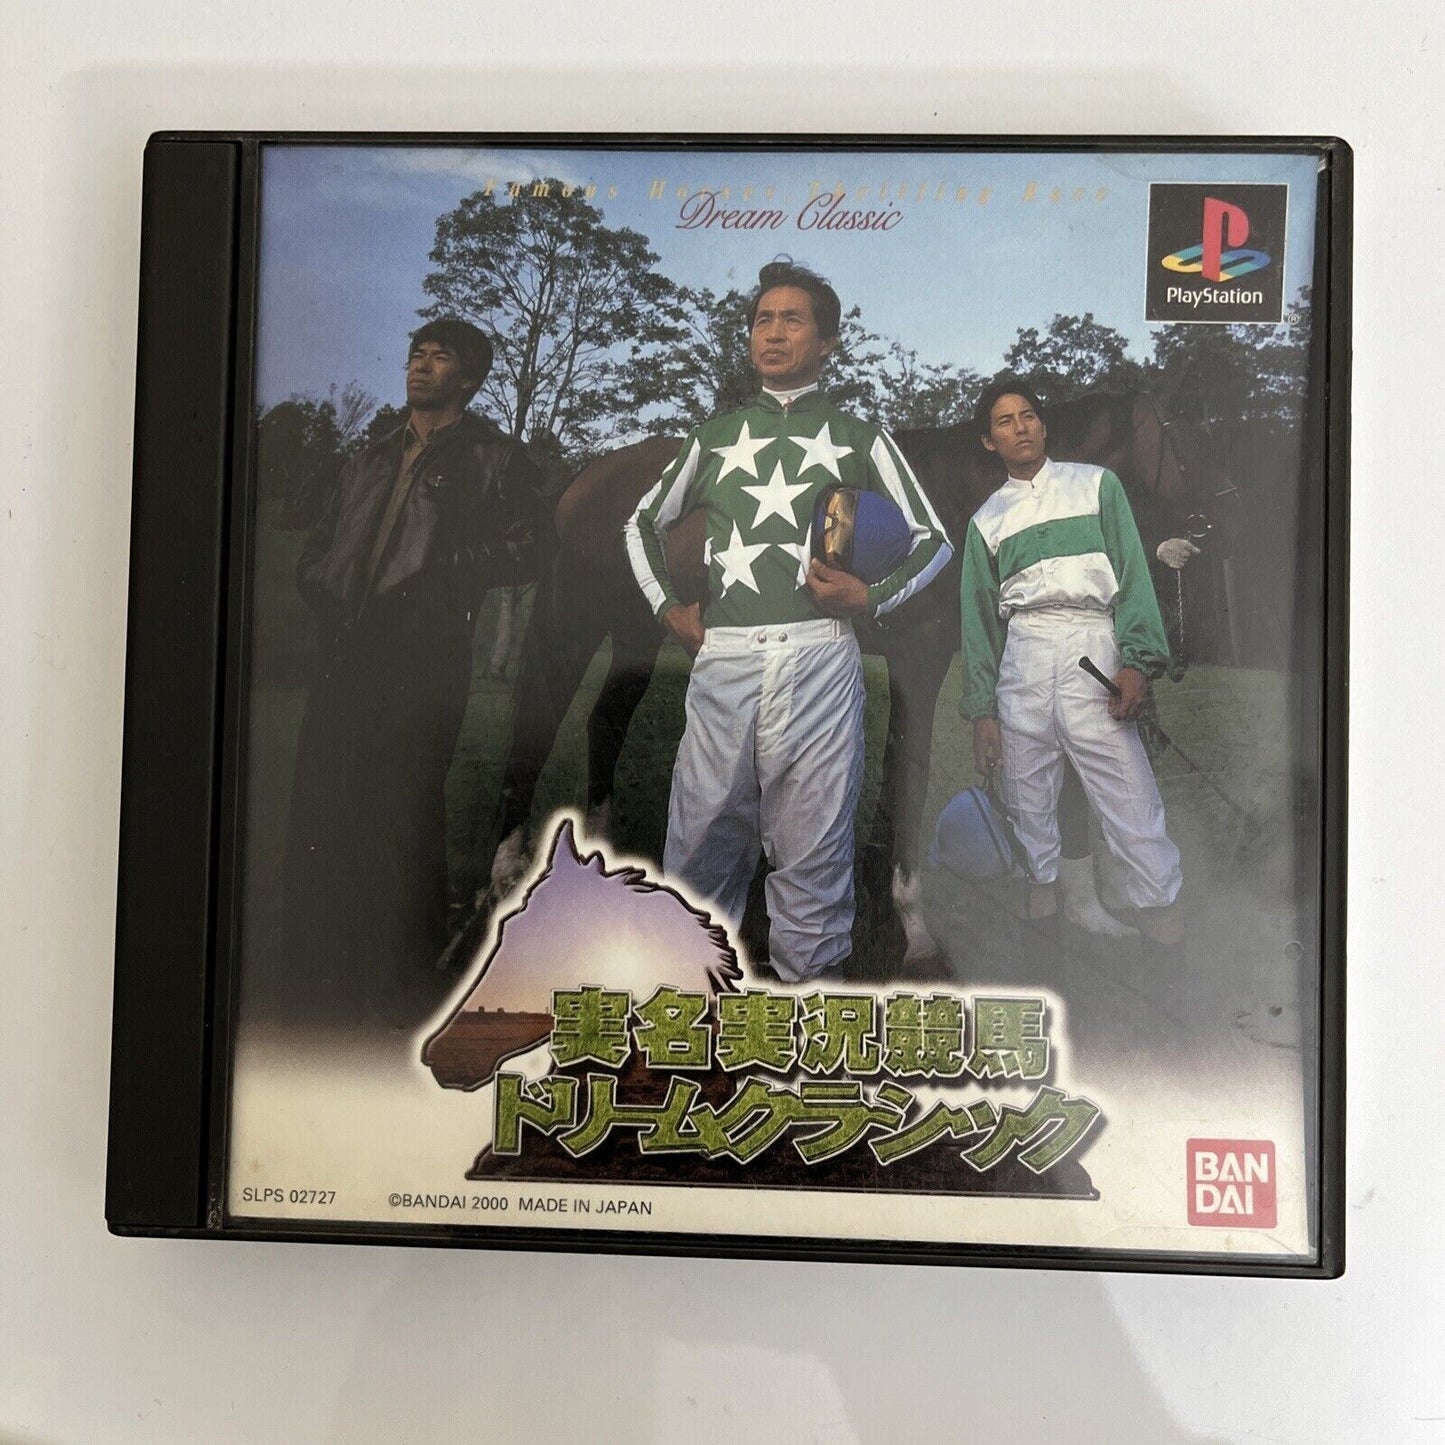 Jitsumei Jikkyou Keiba Dream Classic - PlayStation PS1 NTSC-J JAPAN Horse Racing